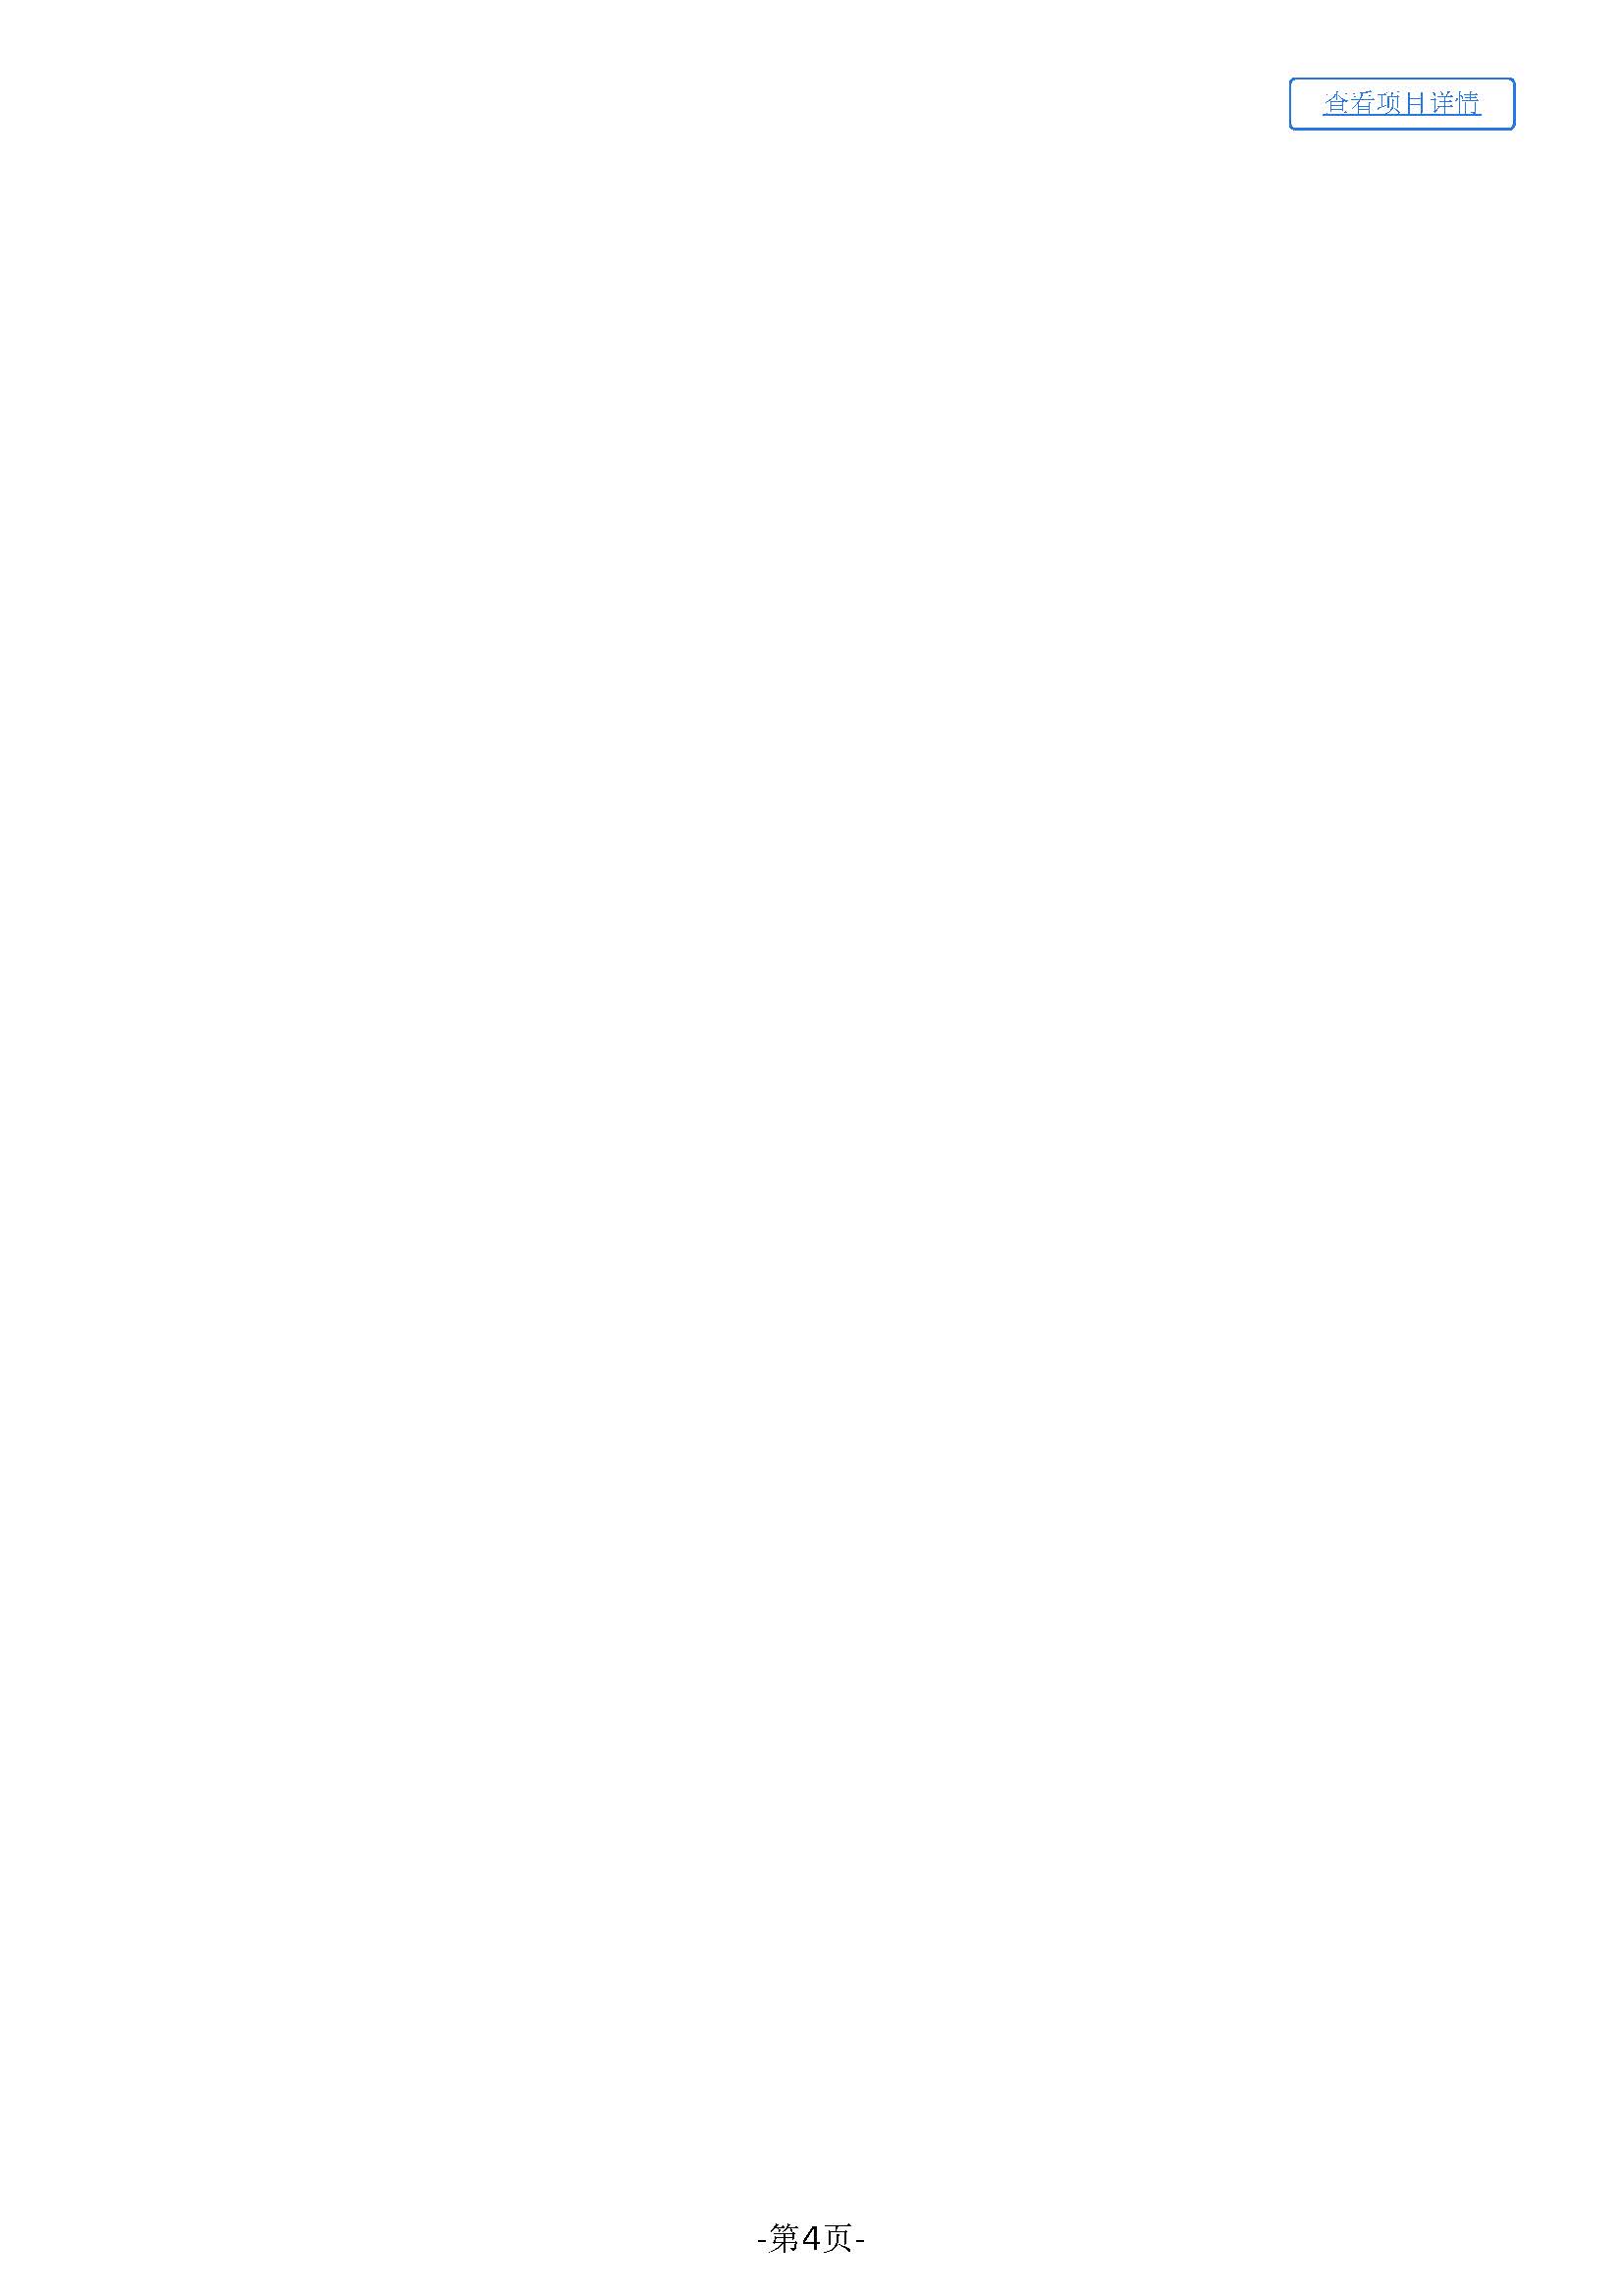 35.57广东省明康监狱修缮工程定点采购竞价公告（综合楼修缮）_页面_4.jpg